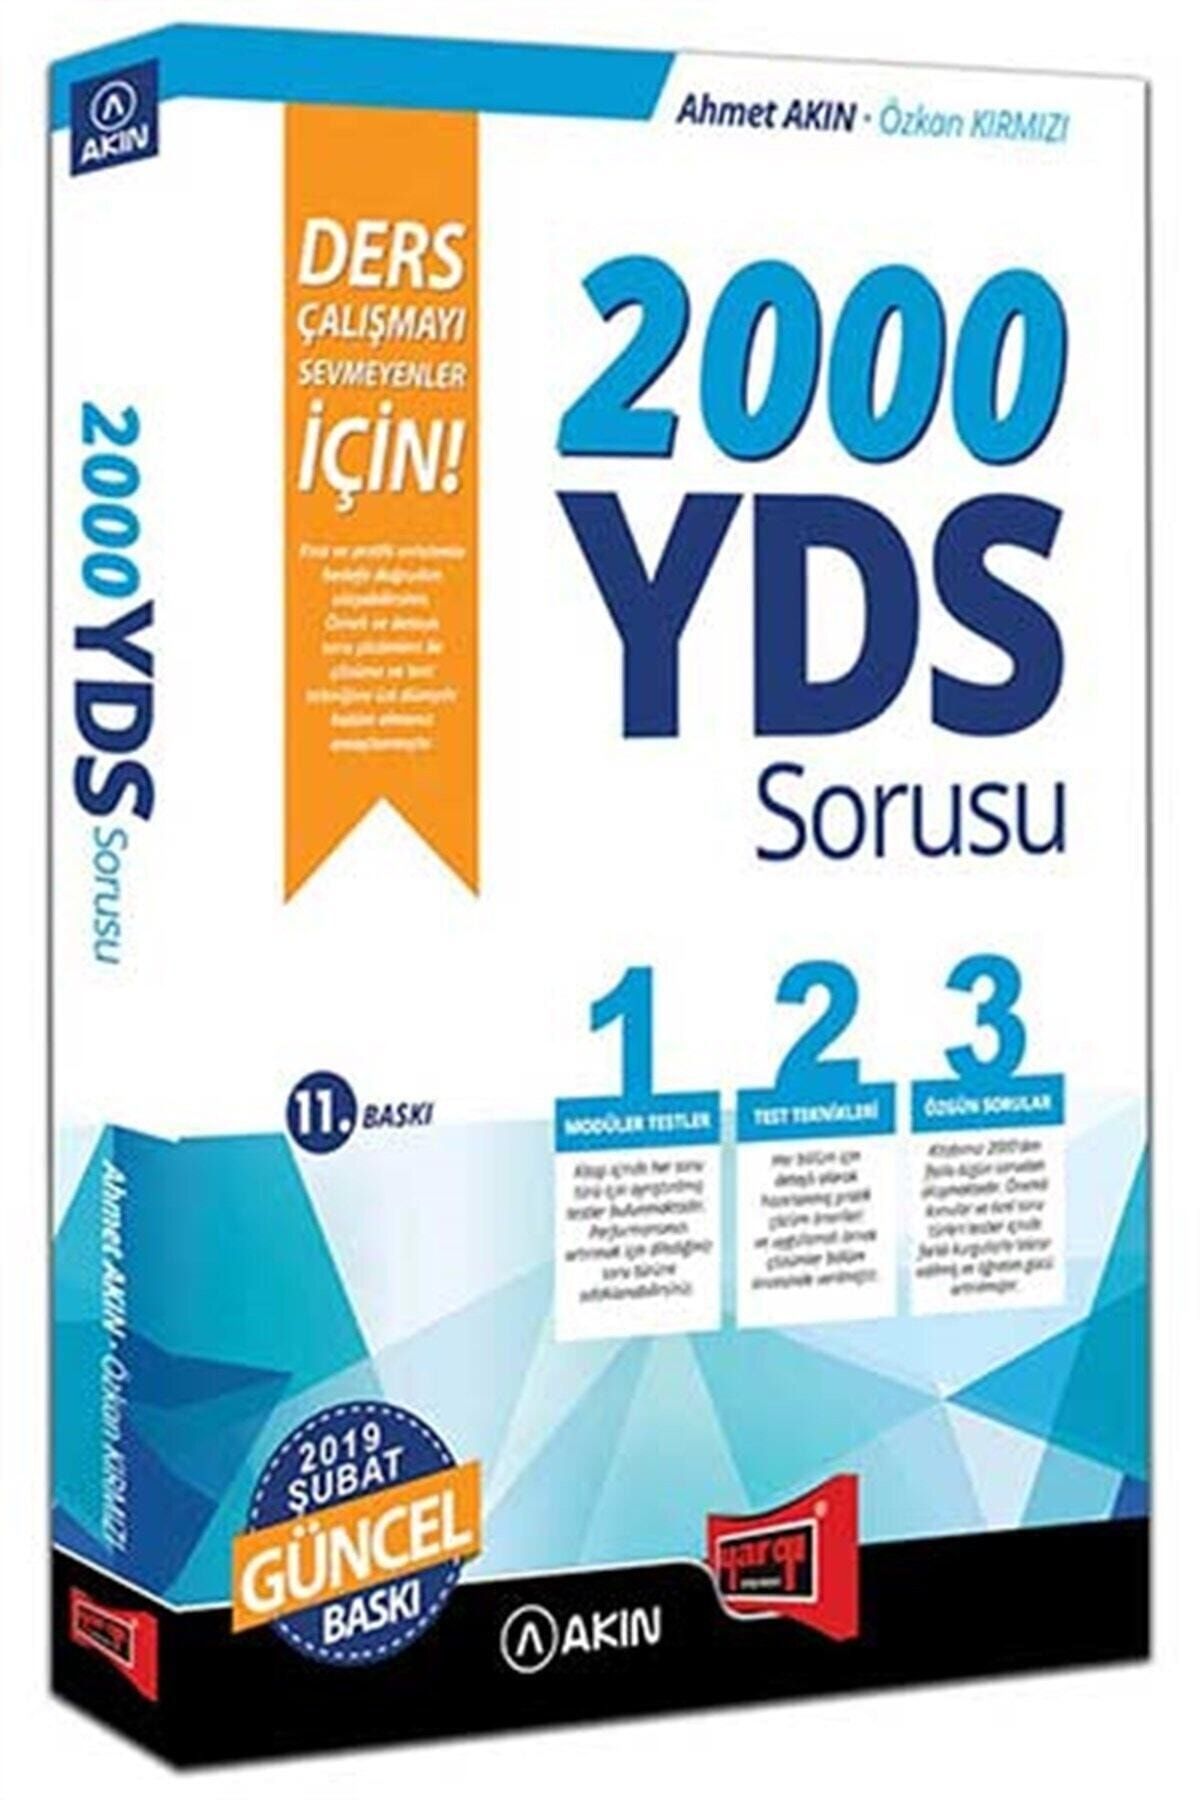 DIGERUI Akın Dil & Yargı Yayınları 2000 Yds Sorusu Ders Çalışmayı Sevmeyenler Için 11. Baskı